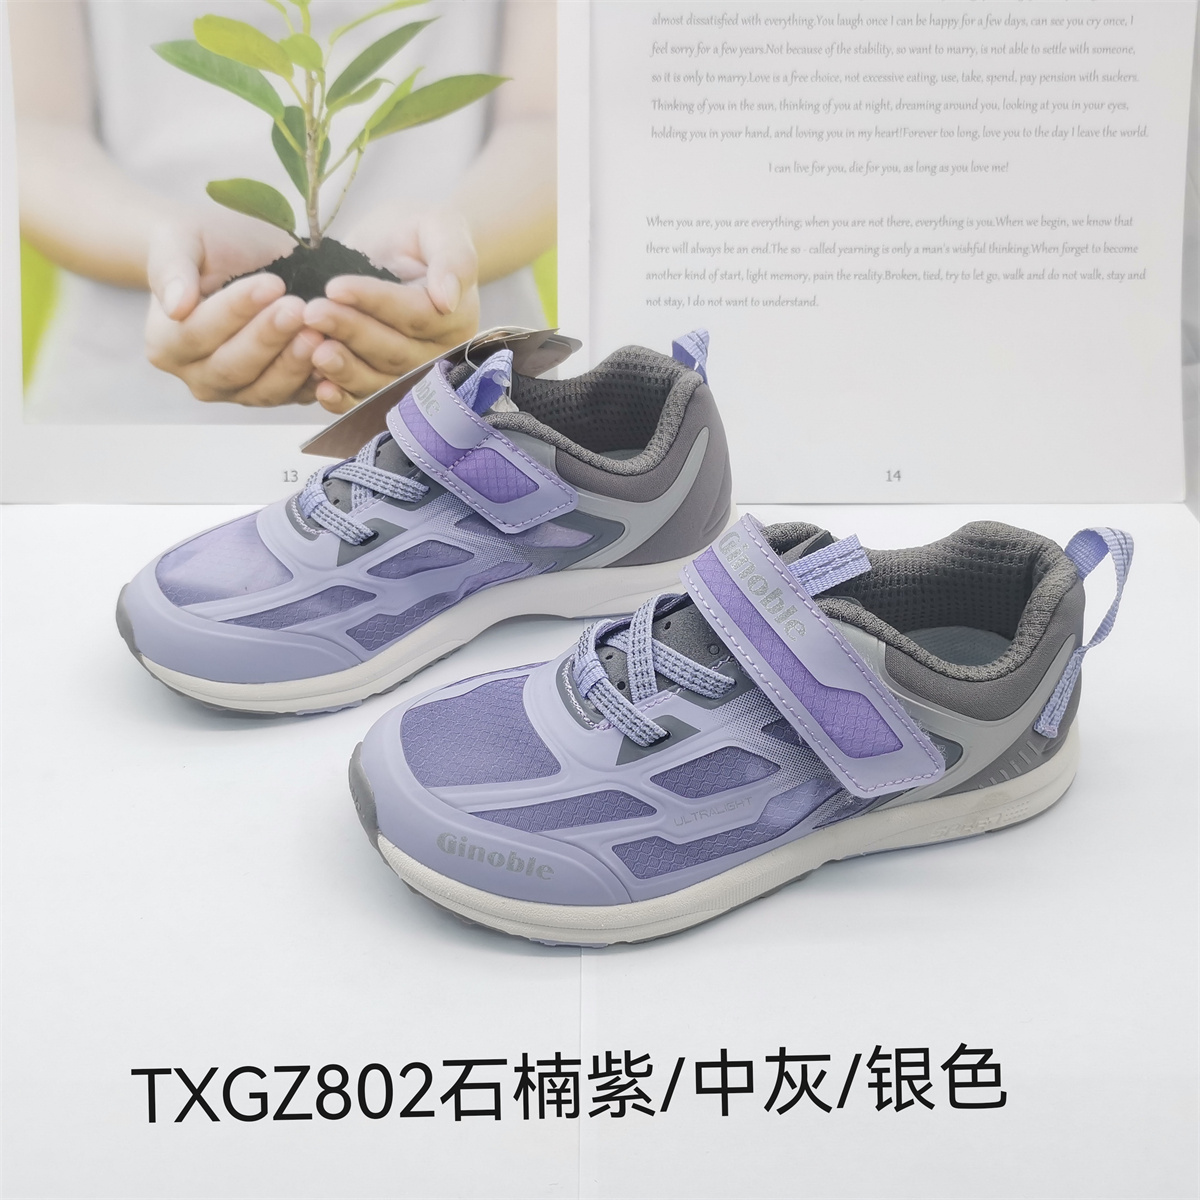 基诺浦春夏款中童网面机能鞋跑步鞋TXGZ802.803.804.805.806.809